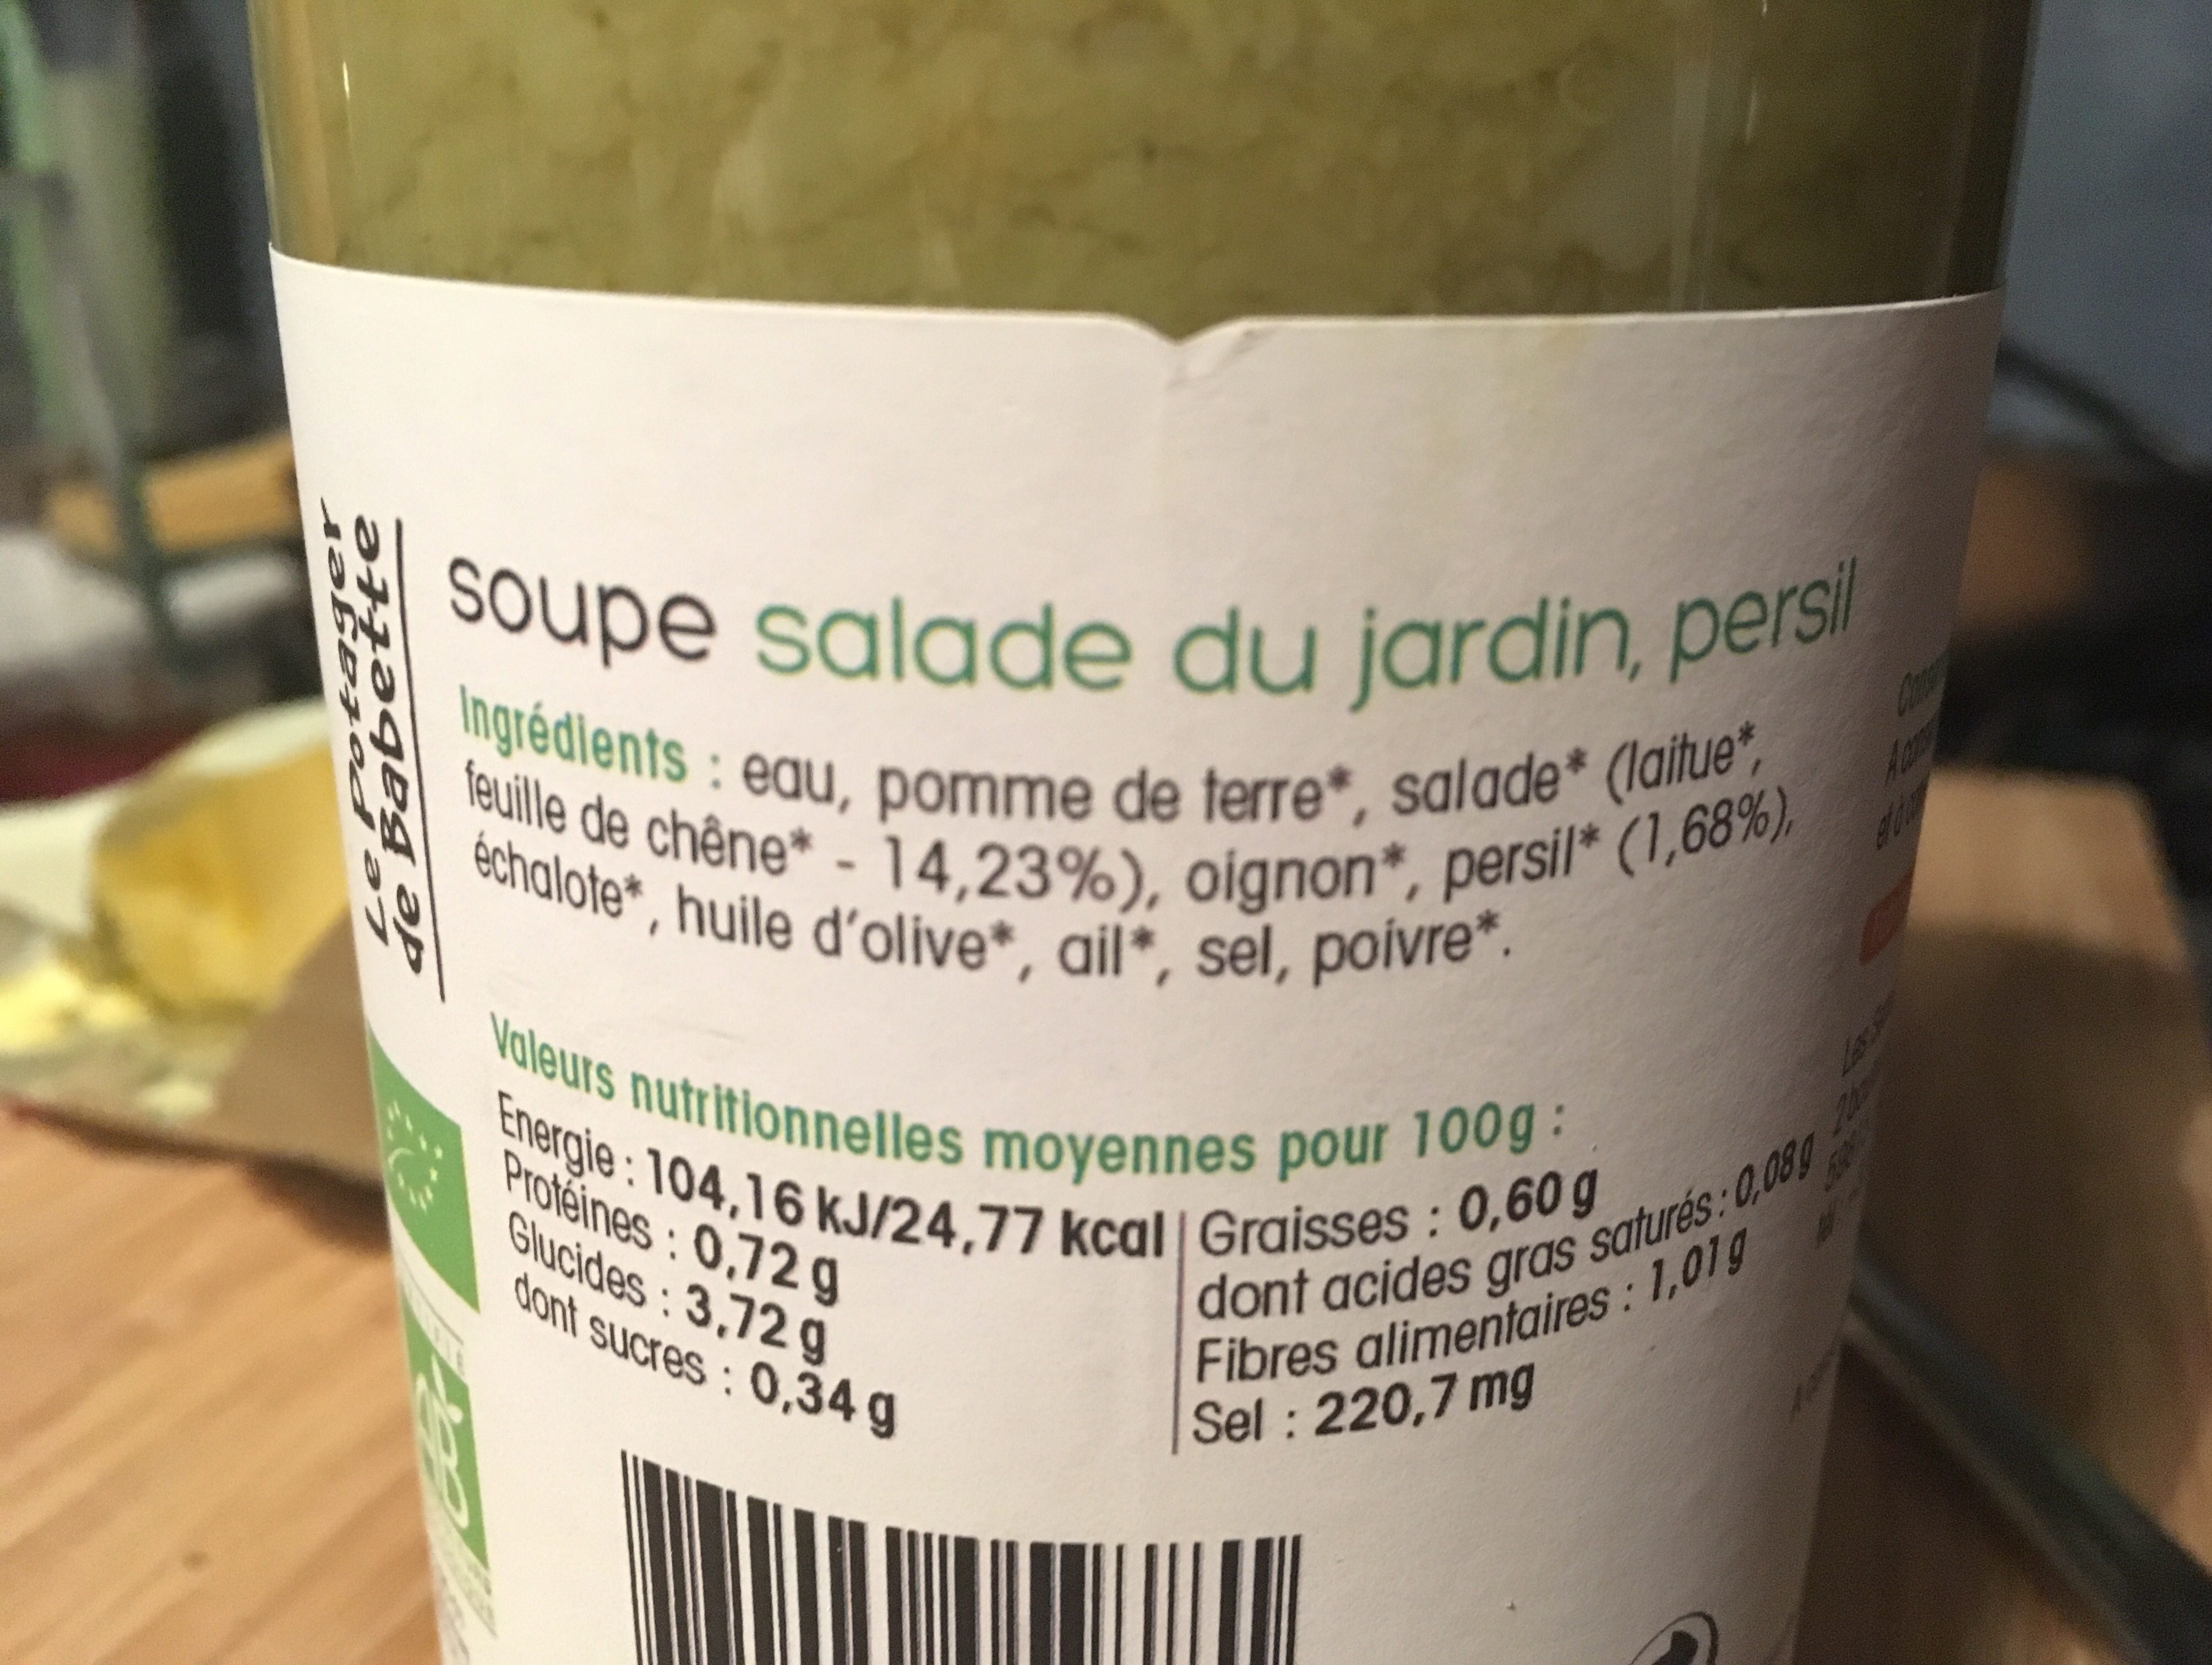 Soupe salade du jardin persil - Ingredienser - fr